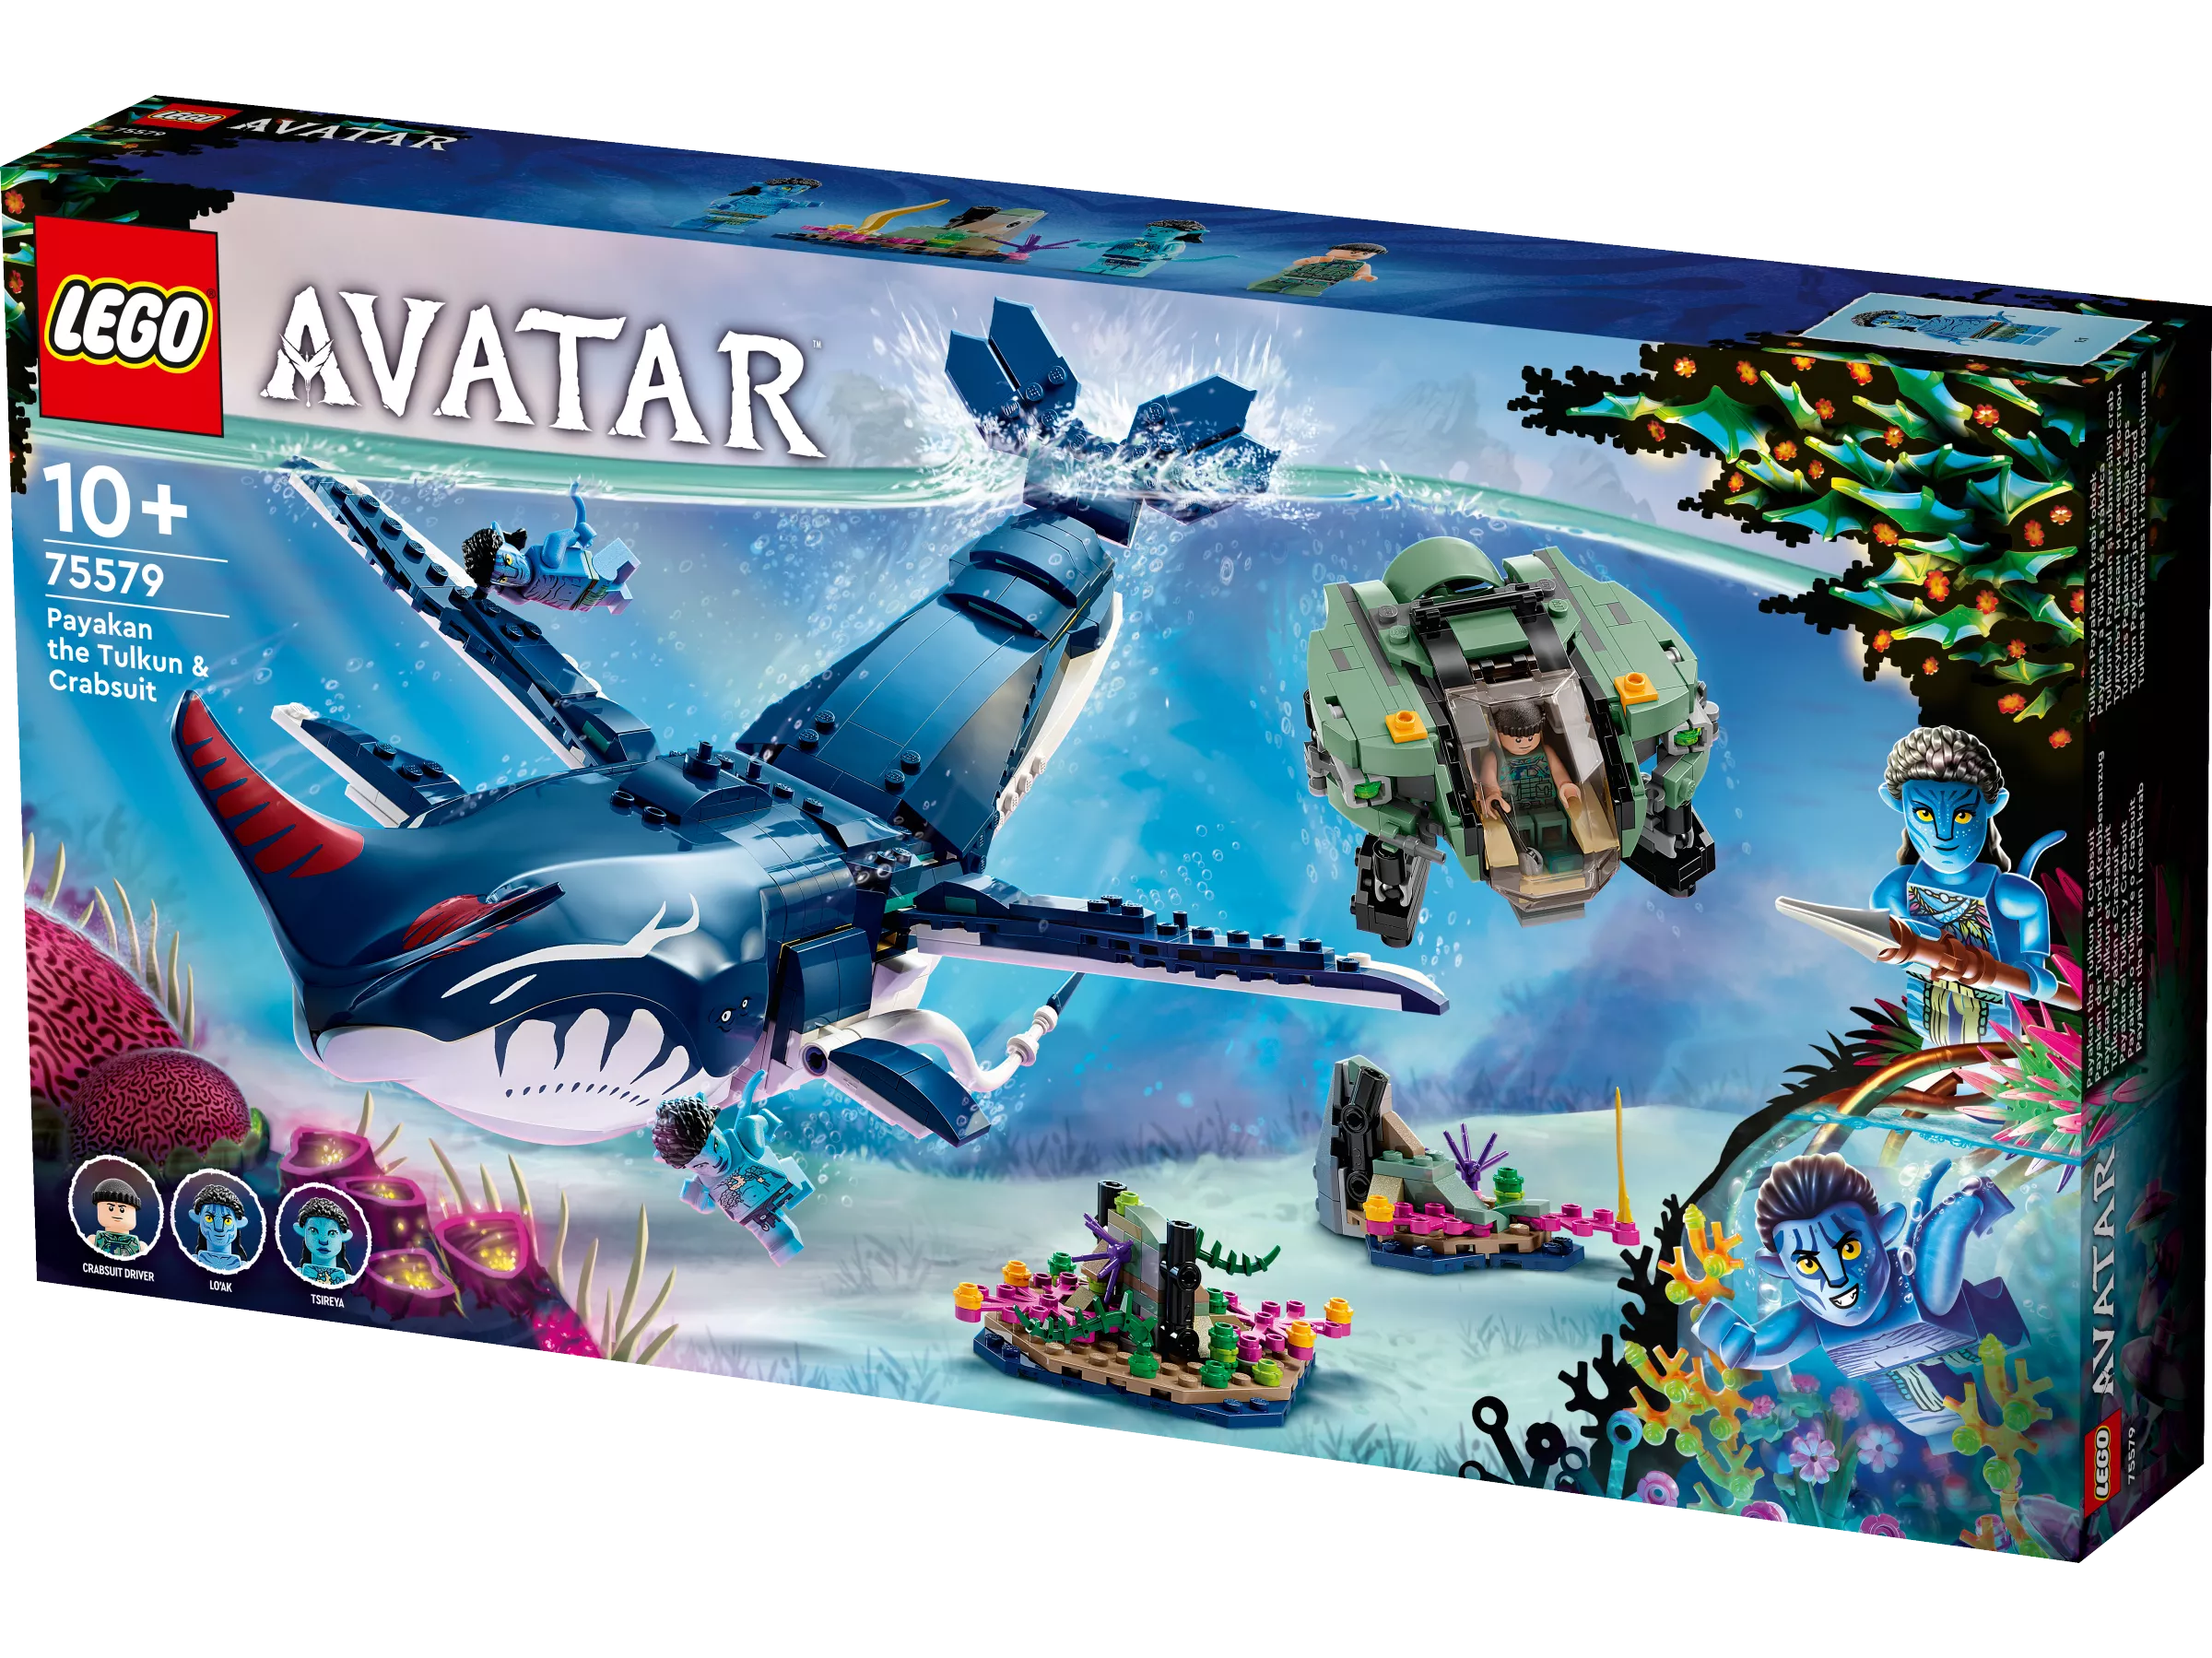 LEGO 75579 Avatar Payakan der Tulkun und Krabbenanzug